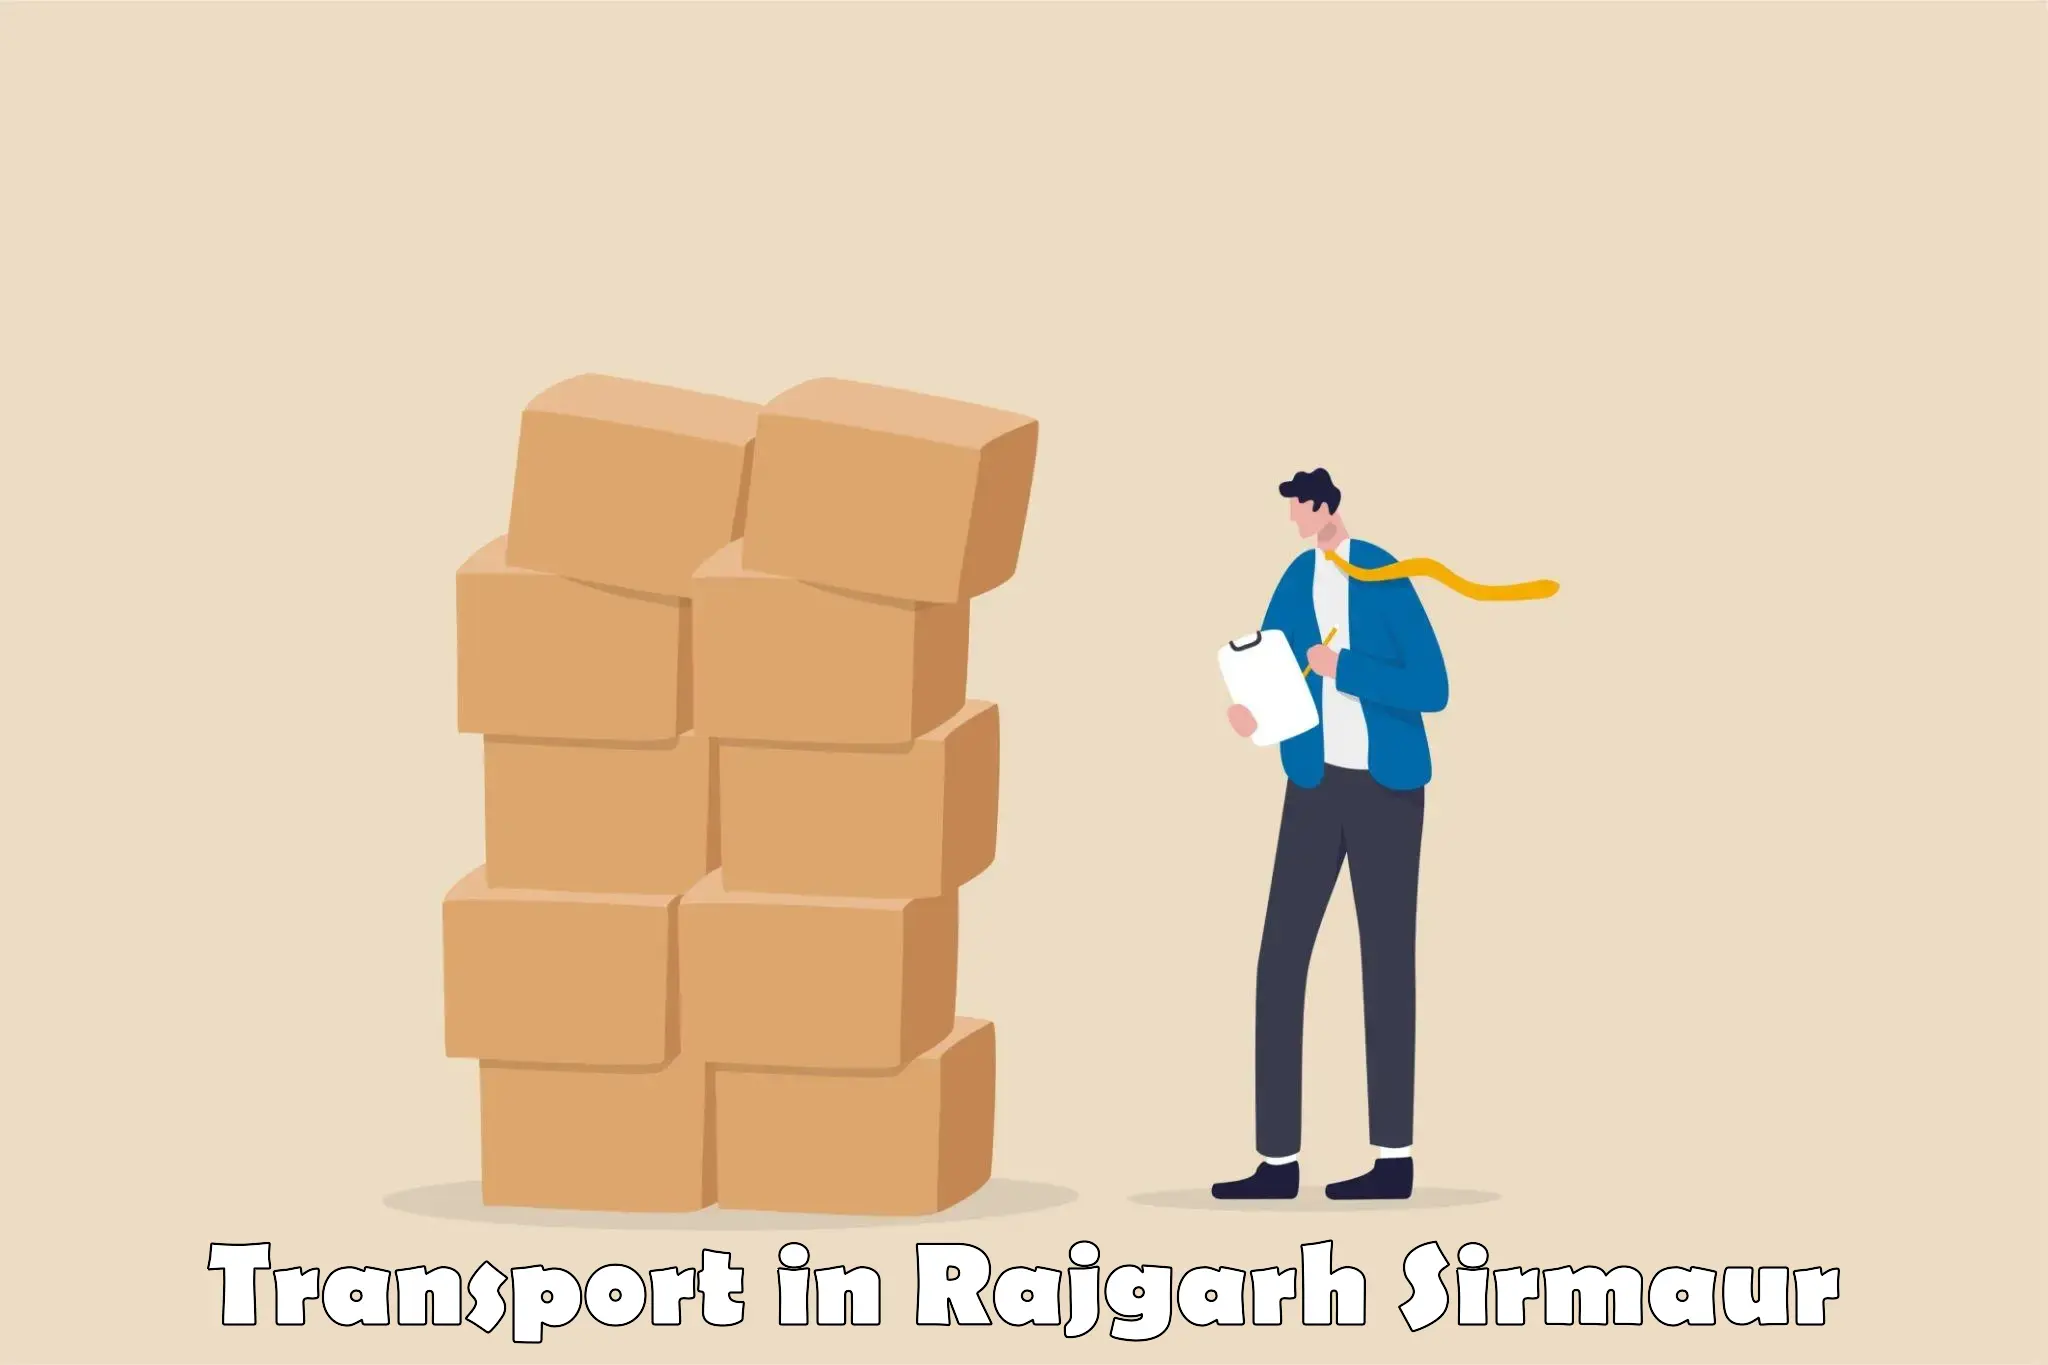 Scooty parcel in Rajgarh Sirmaur